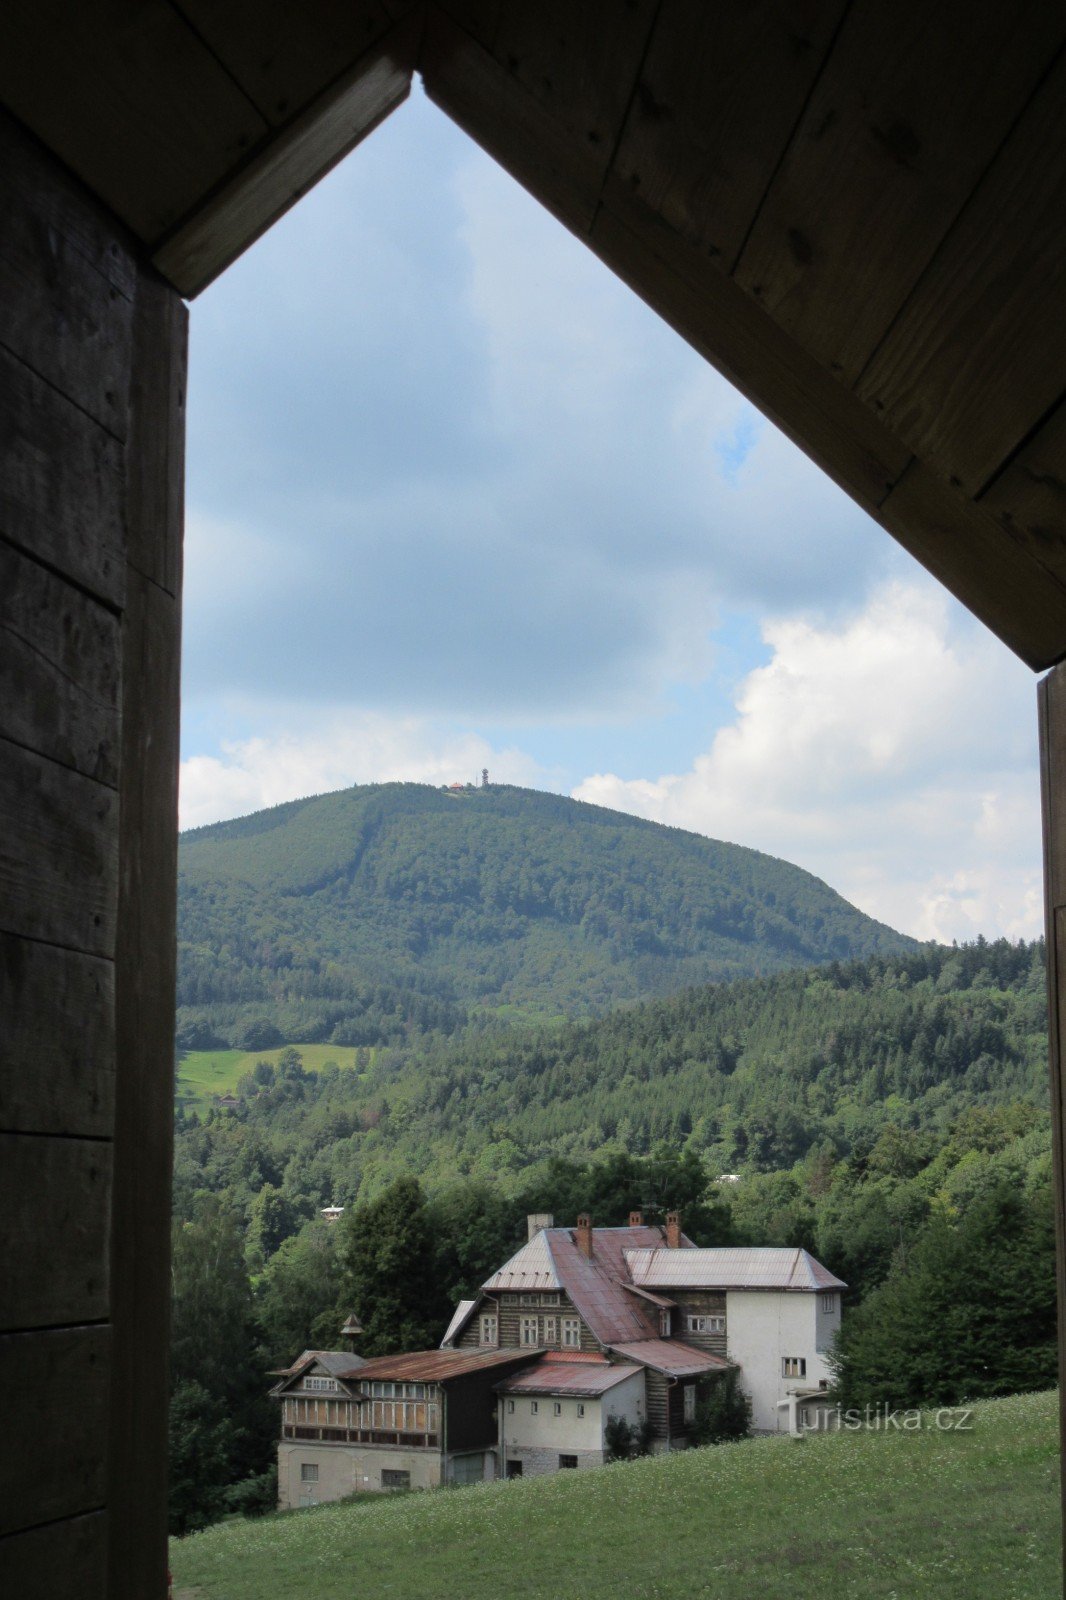 Pogled kroz sklonište pored zvonika na Velký Javorník